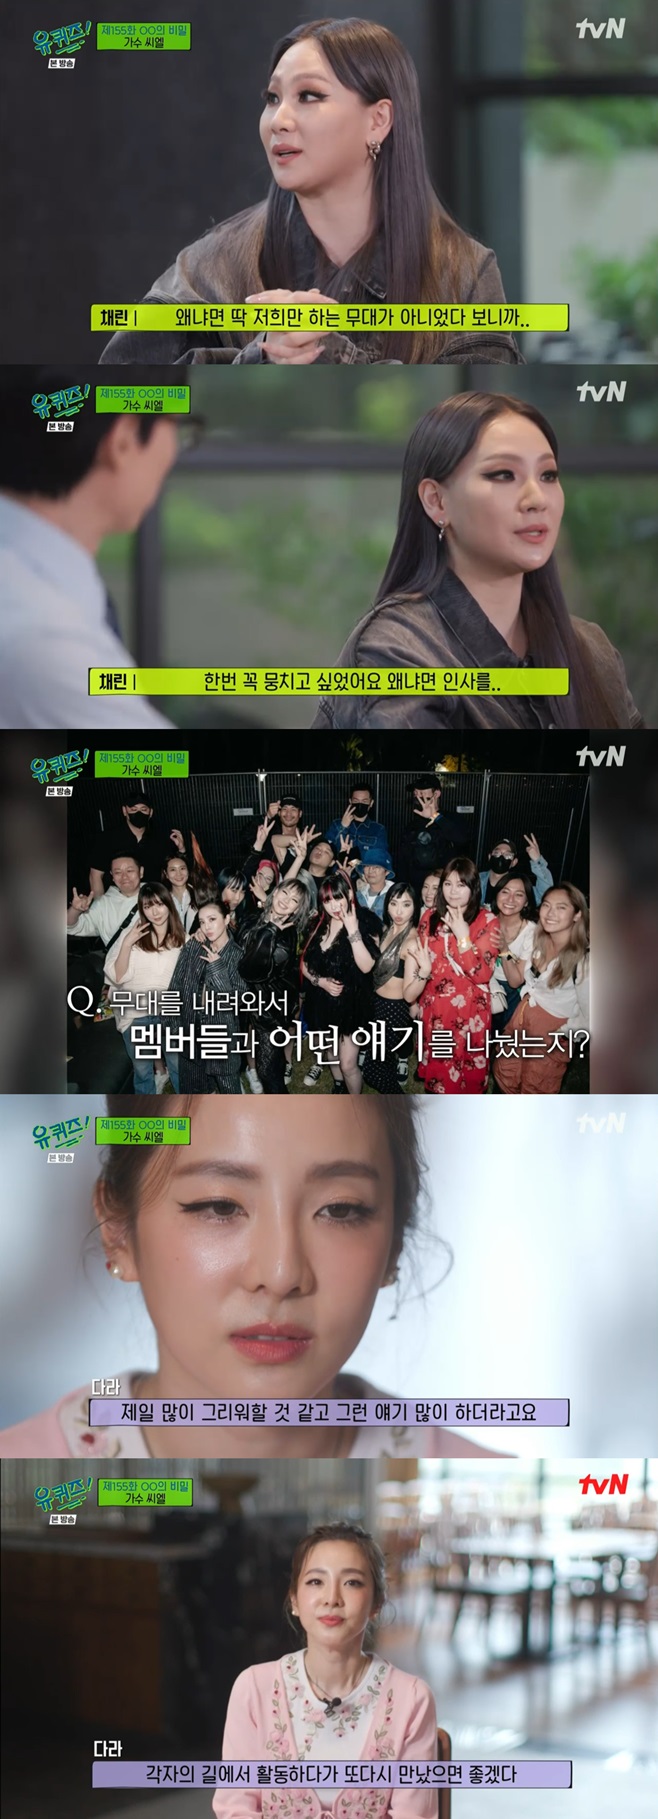 tvN 유 퀴즈 온 더 블럭, 유퀴즈, 씨엘, 산다라박